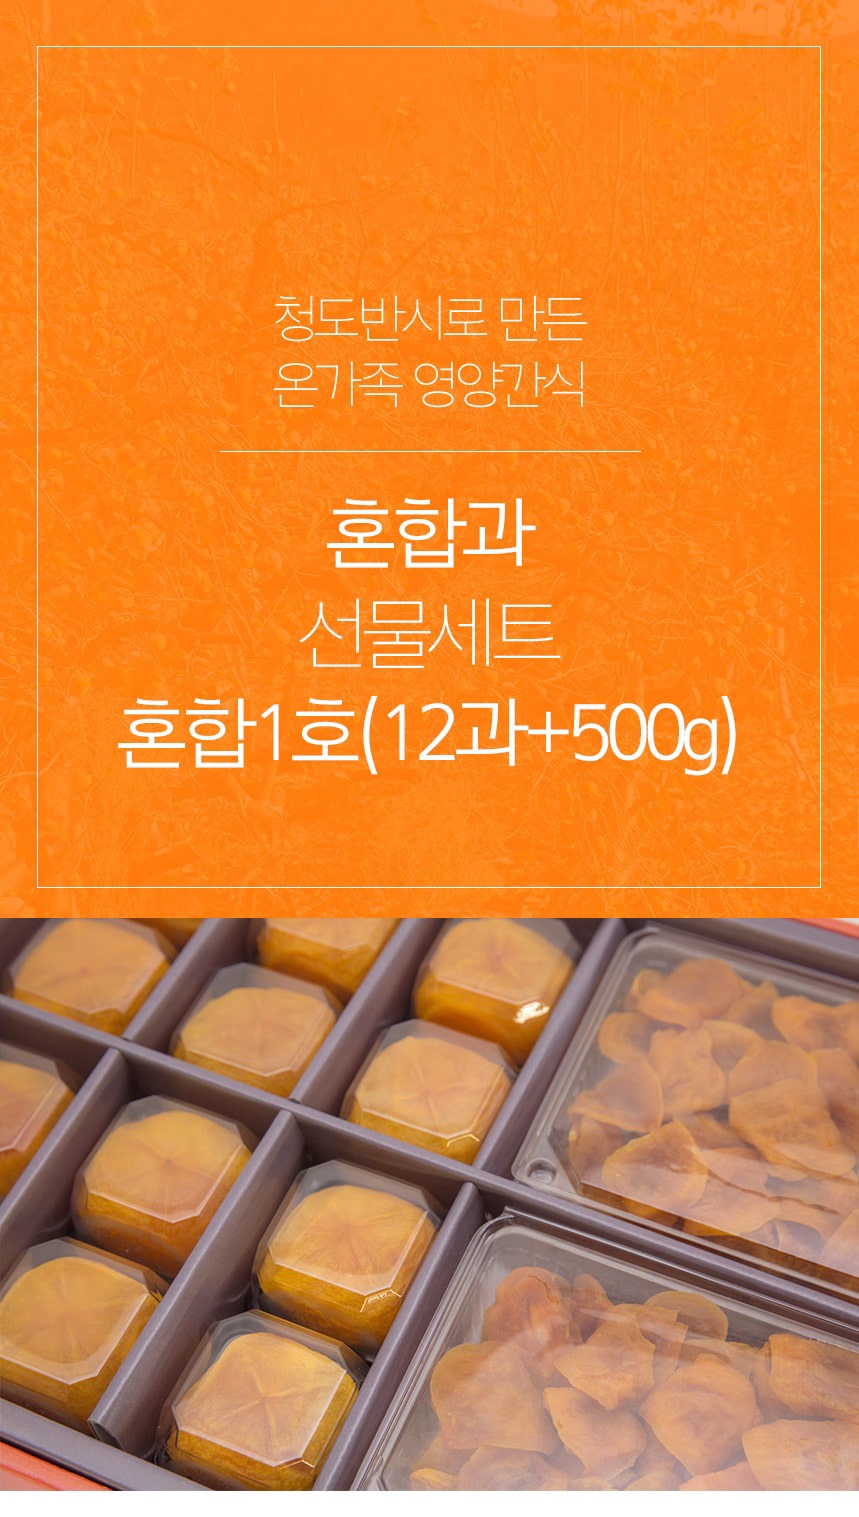 韓國食品-韓國雙款柿乾禮盒 (禮盒套裝9月20日開始送貨)